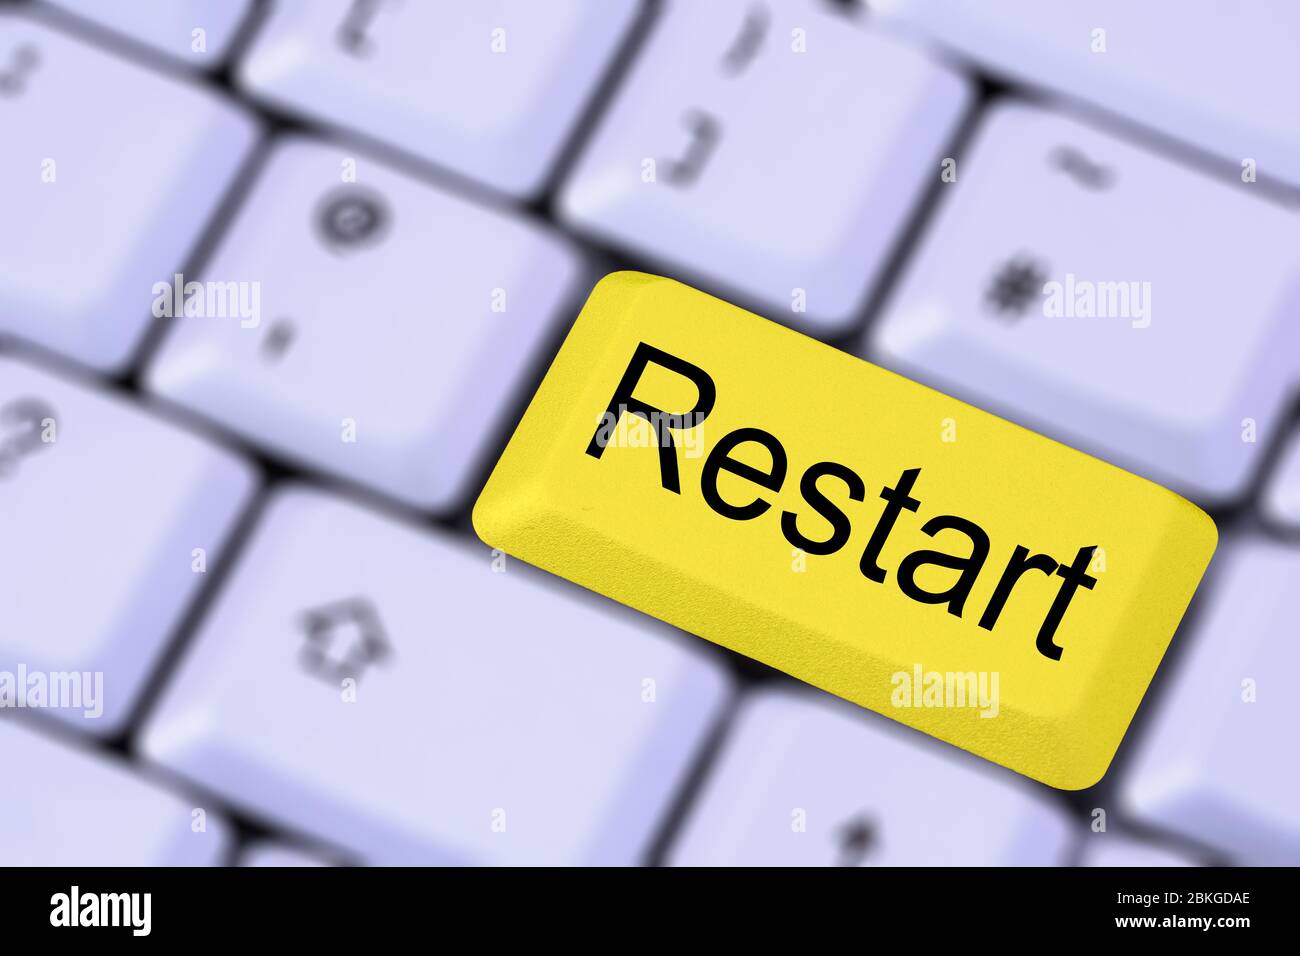 Eine Tastatur mit dem Wort RESTART auf einer gelben ENTER-Taste auf einem verschwommenen Hintergrund der Tasten. England, Großbritannien Stockfoto